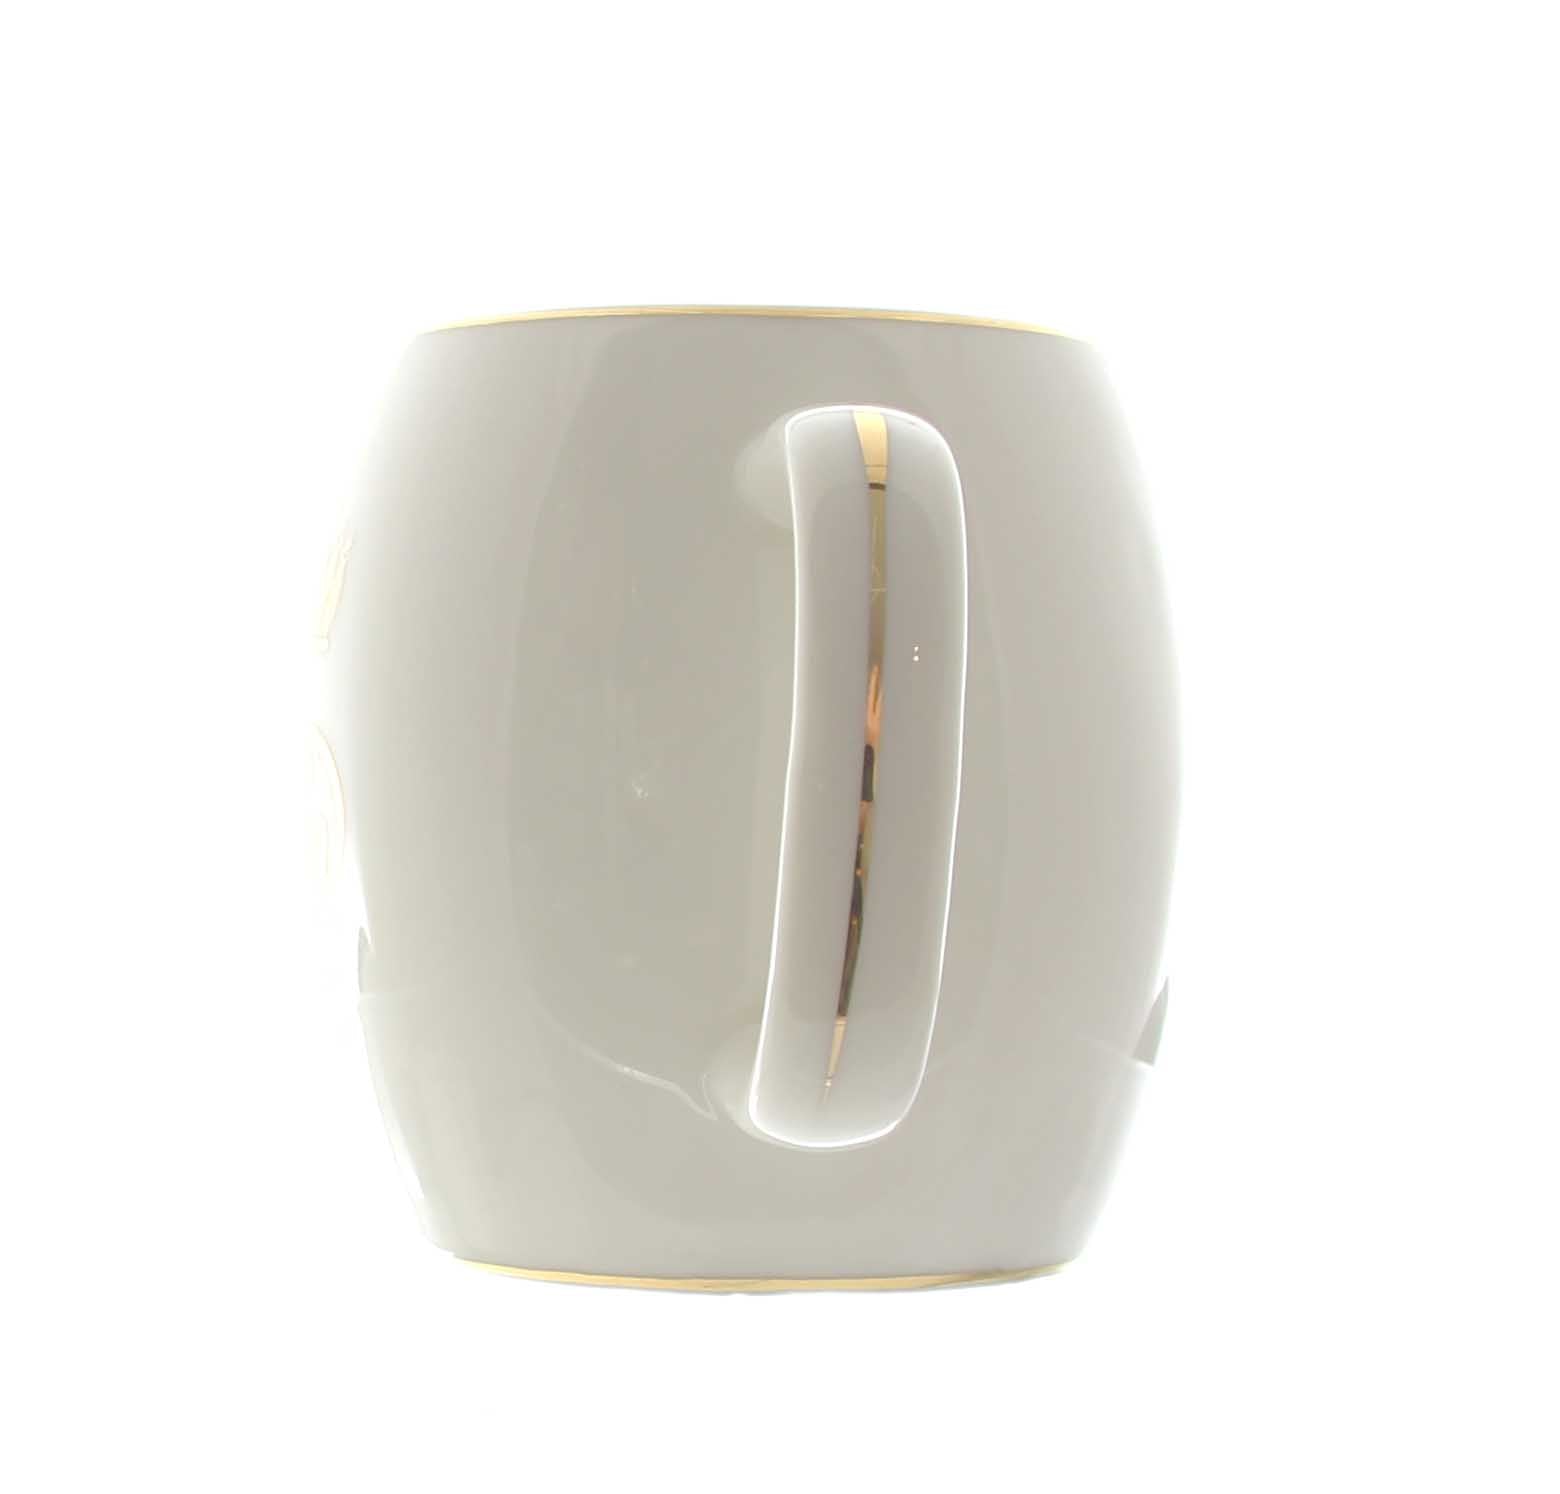 QUEEN Ceramic Mug (Short)